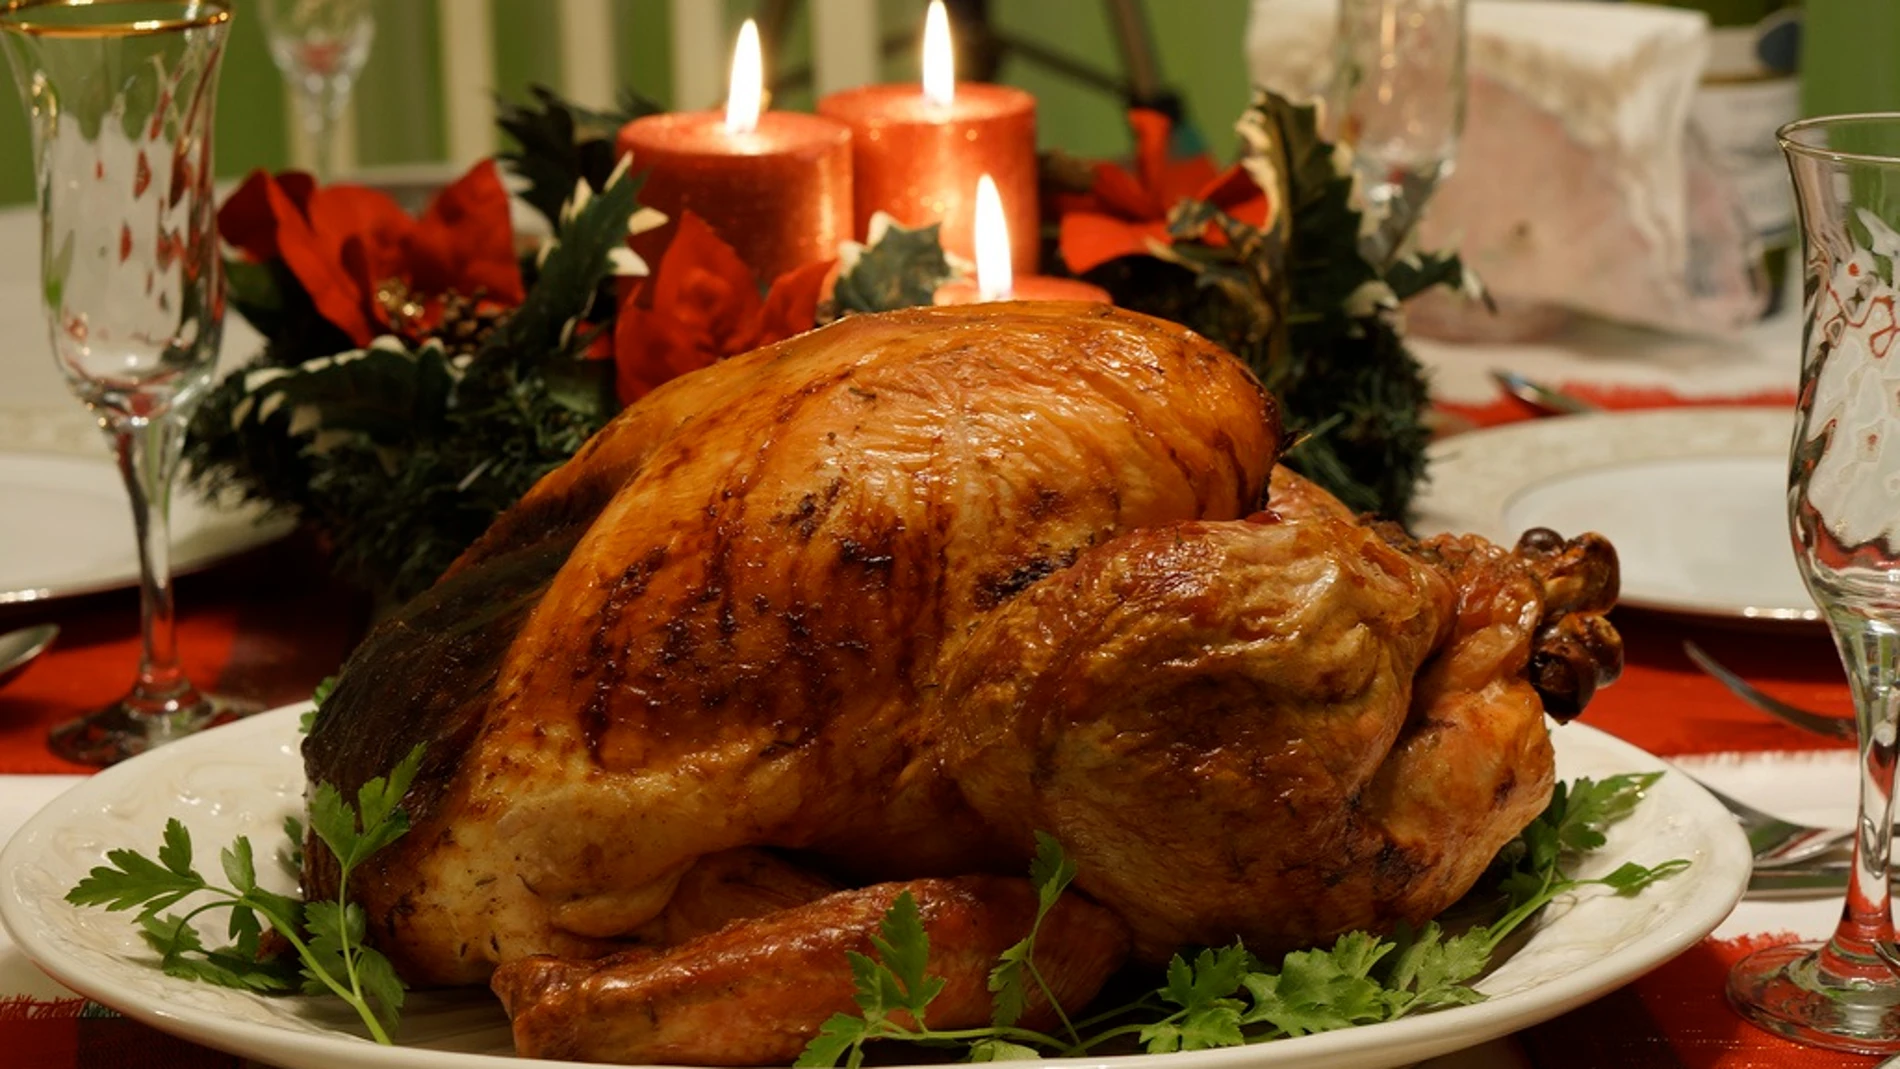 EEUU.- La cena de Acción de Gracias se abarata un 4,5%, pero será la segunda más cara de la historia